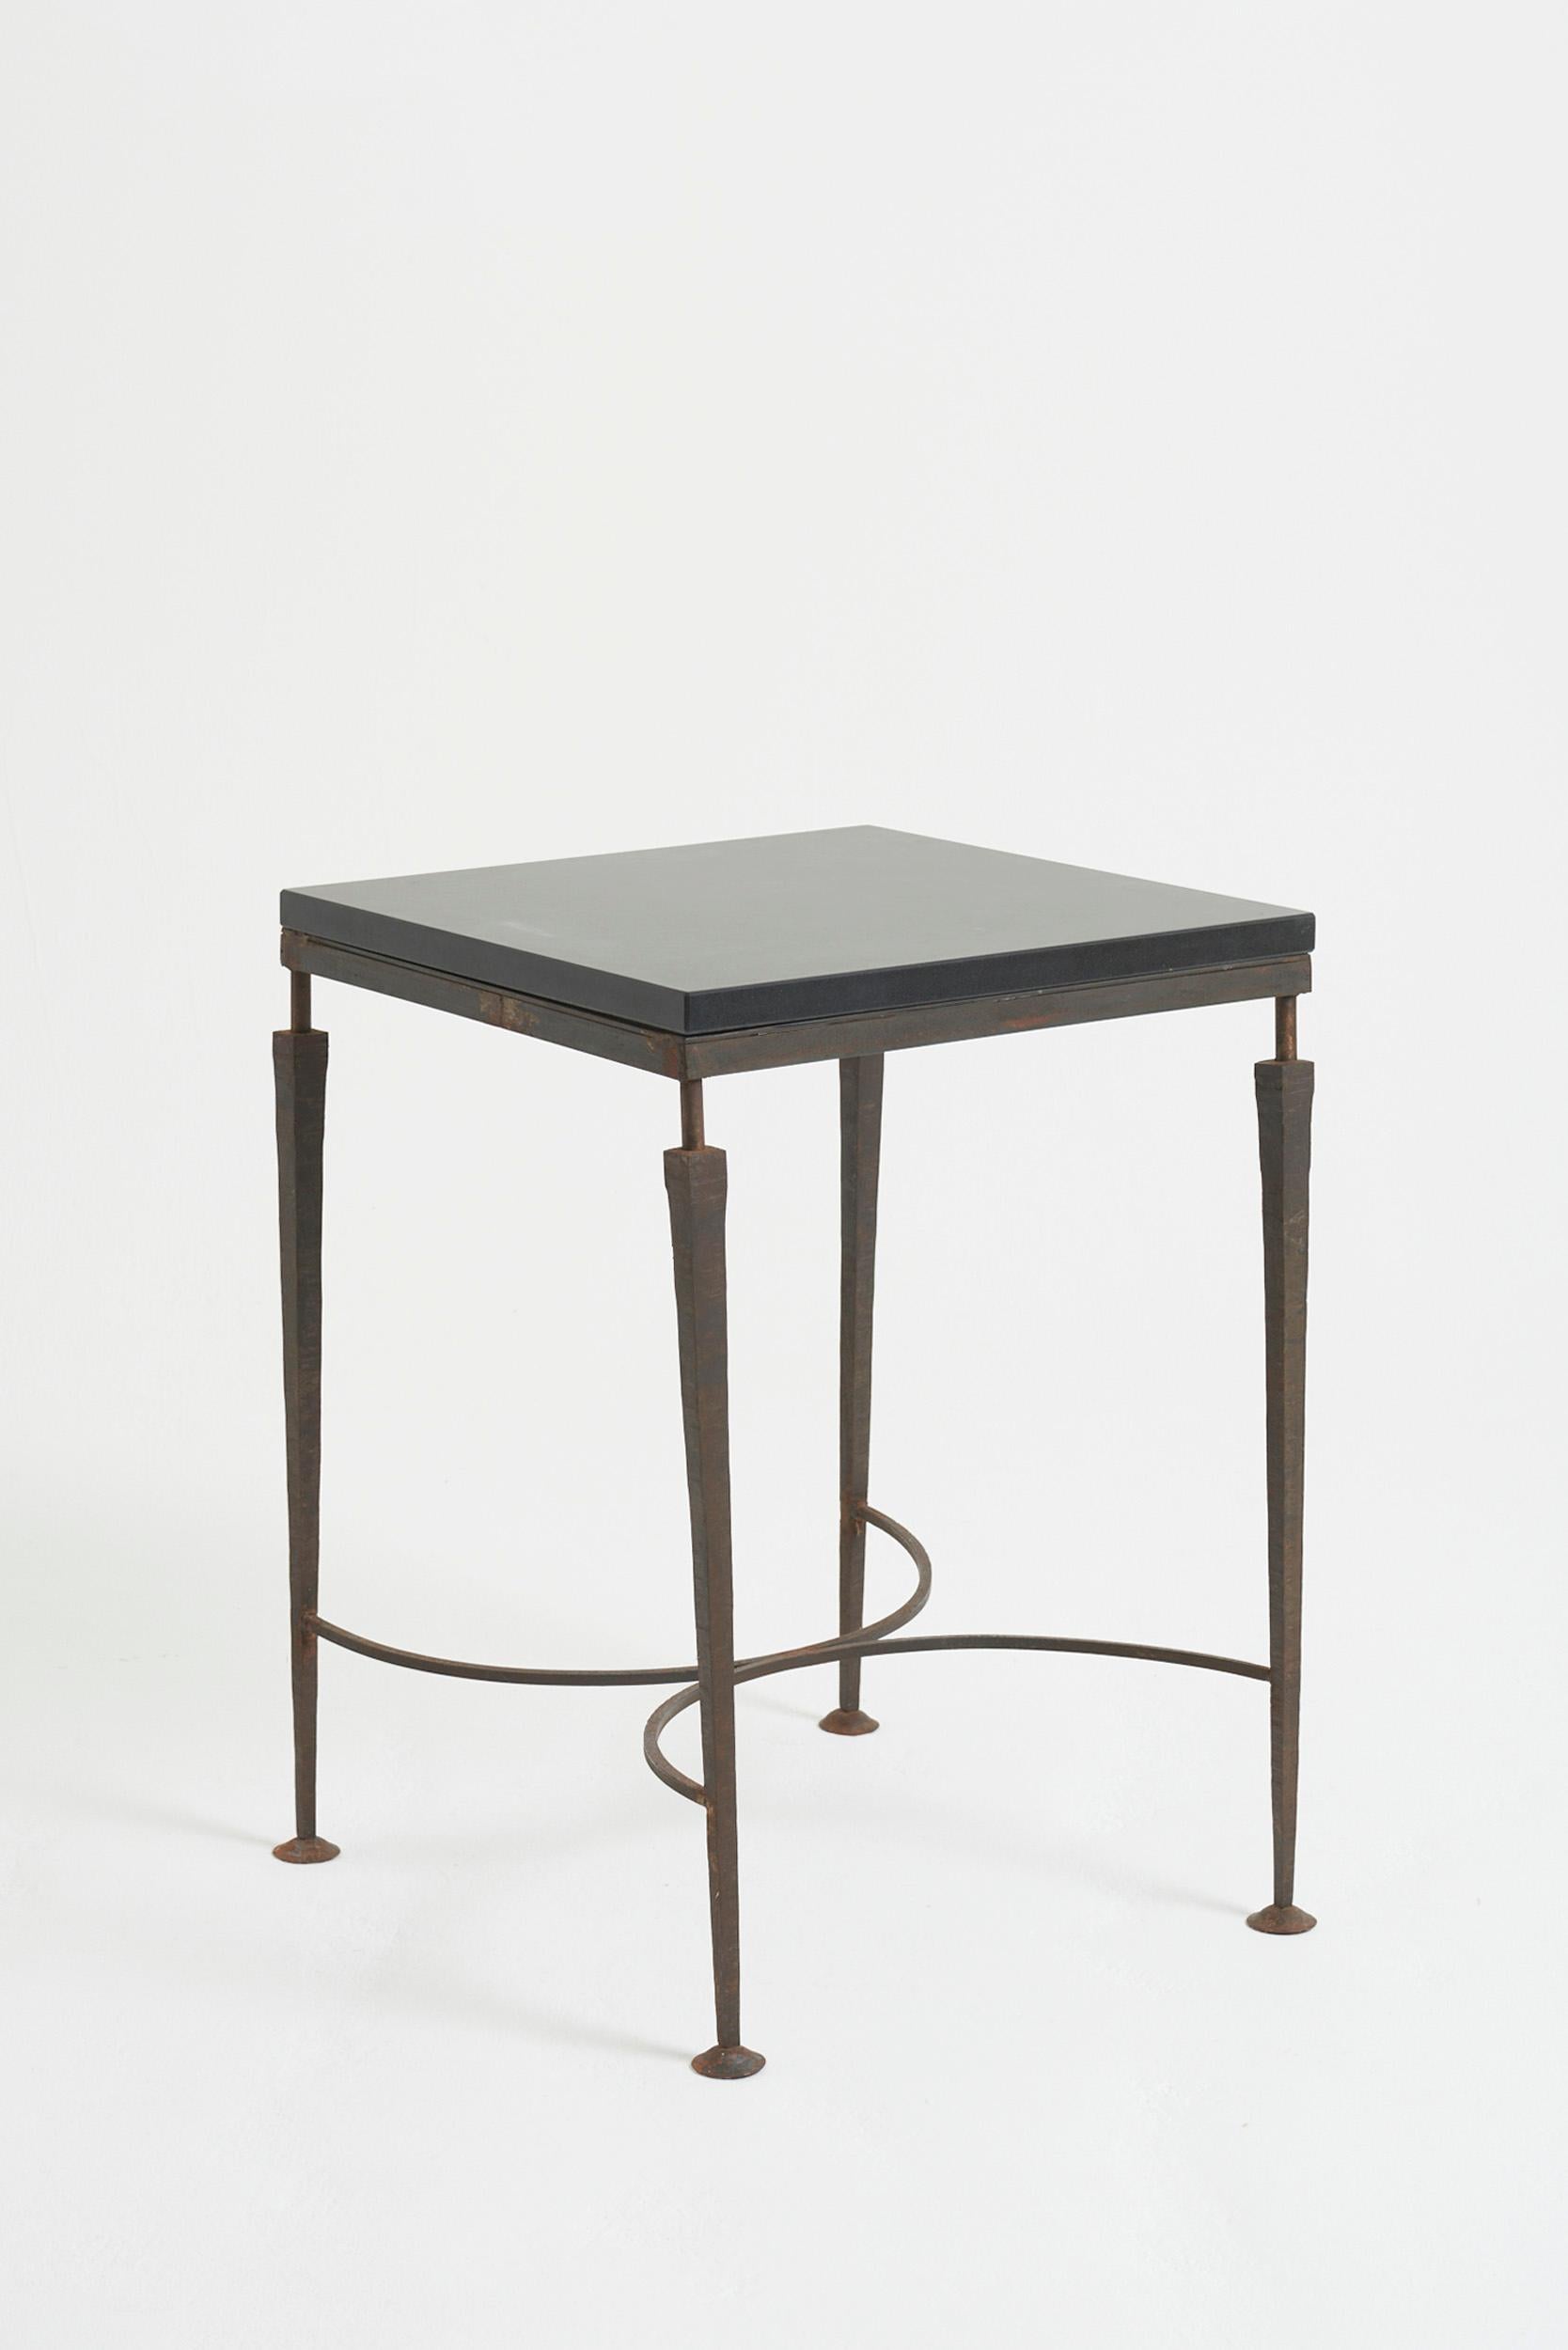 Table carrée en fer forgé et pierre noire
France, deuxième moitié du 20e siècle